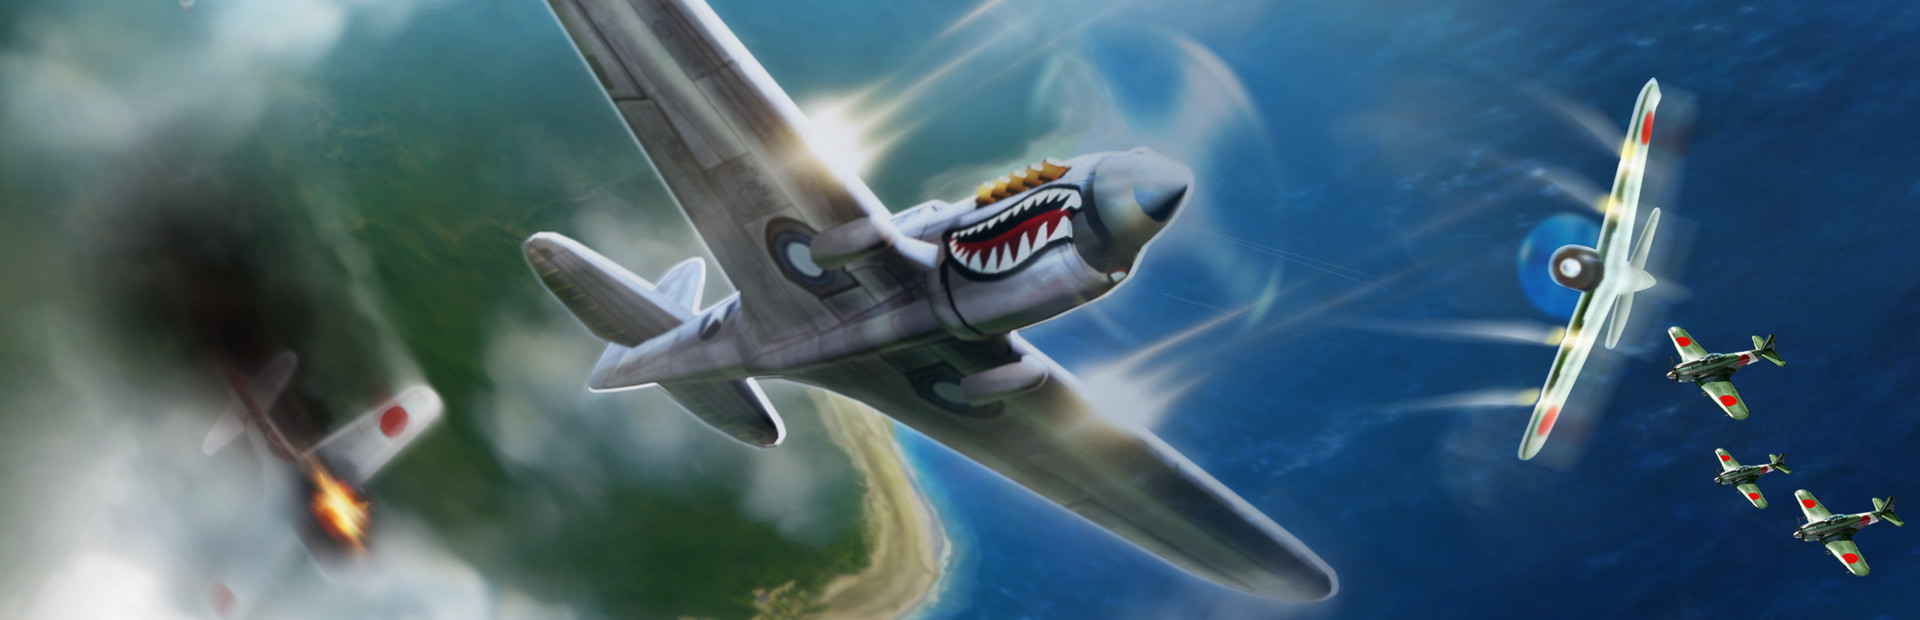 Forum sid. Sid Meier’s Ace Patrol: Pacific Skies.